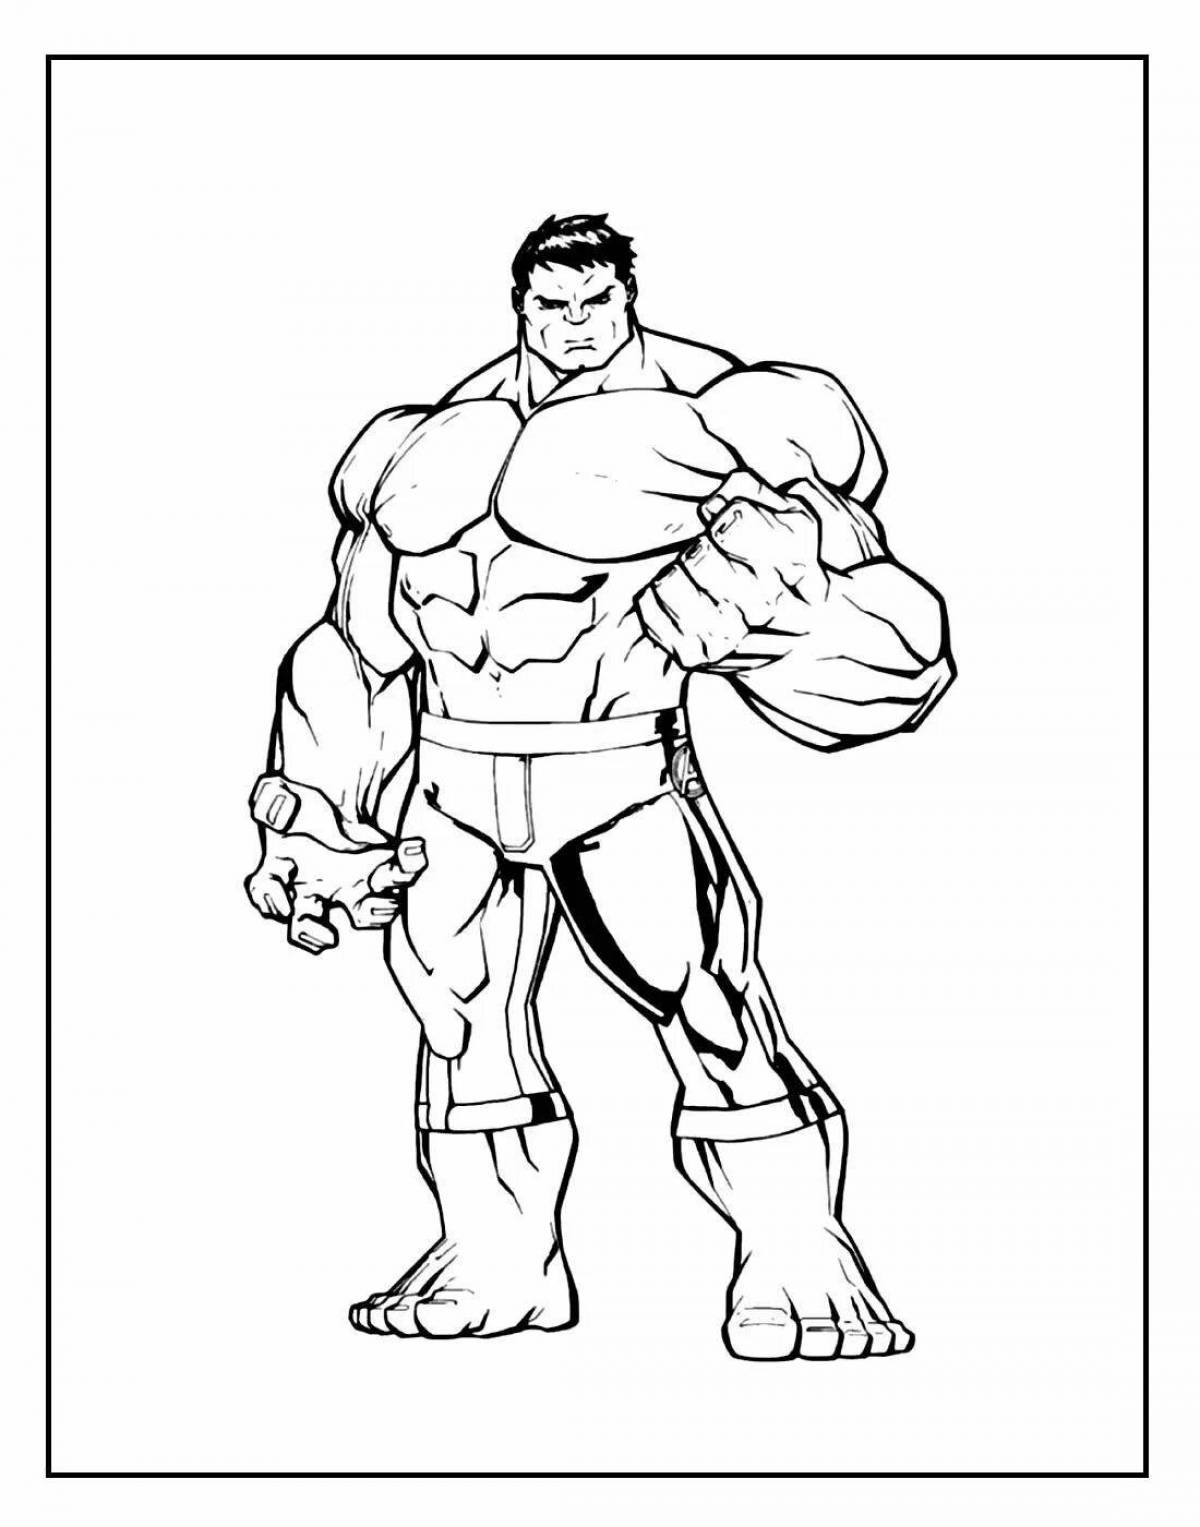 Generous coloring of the hulk man